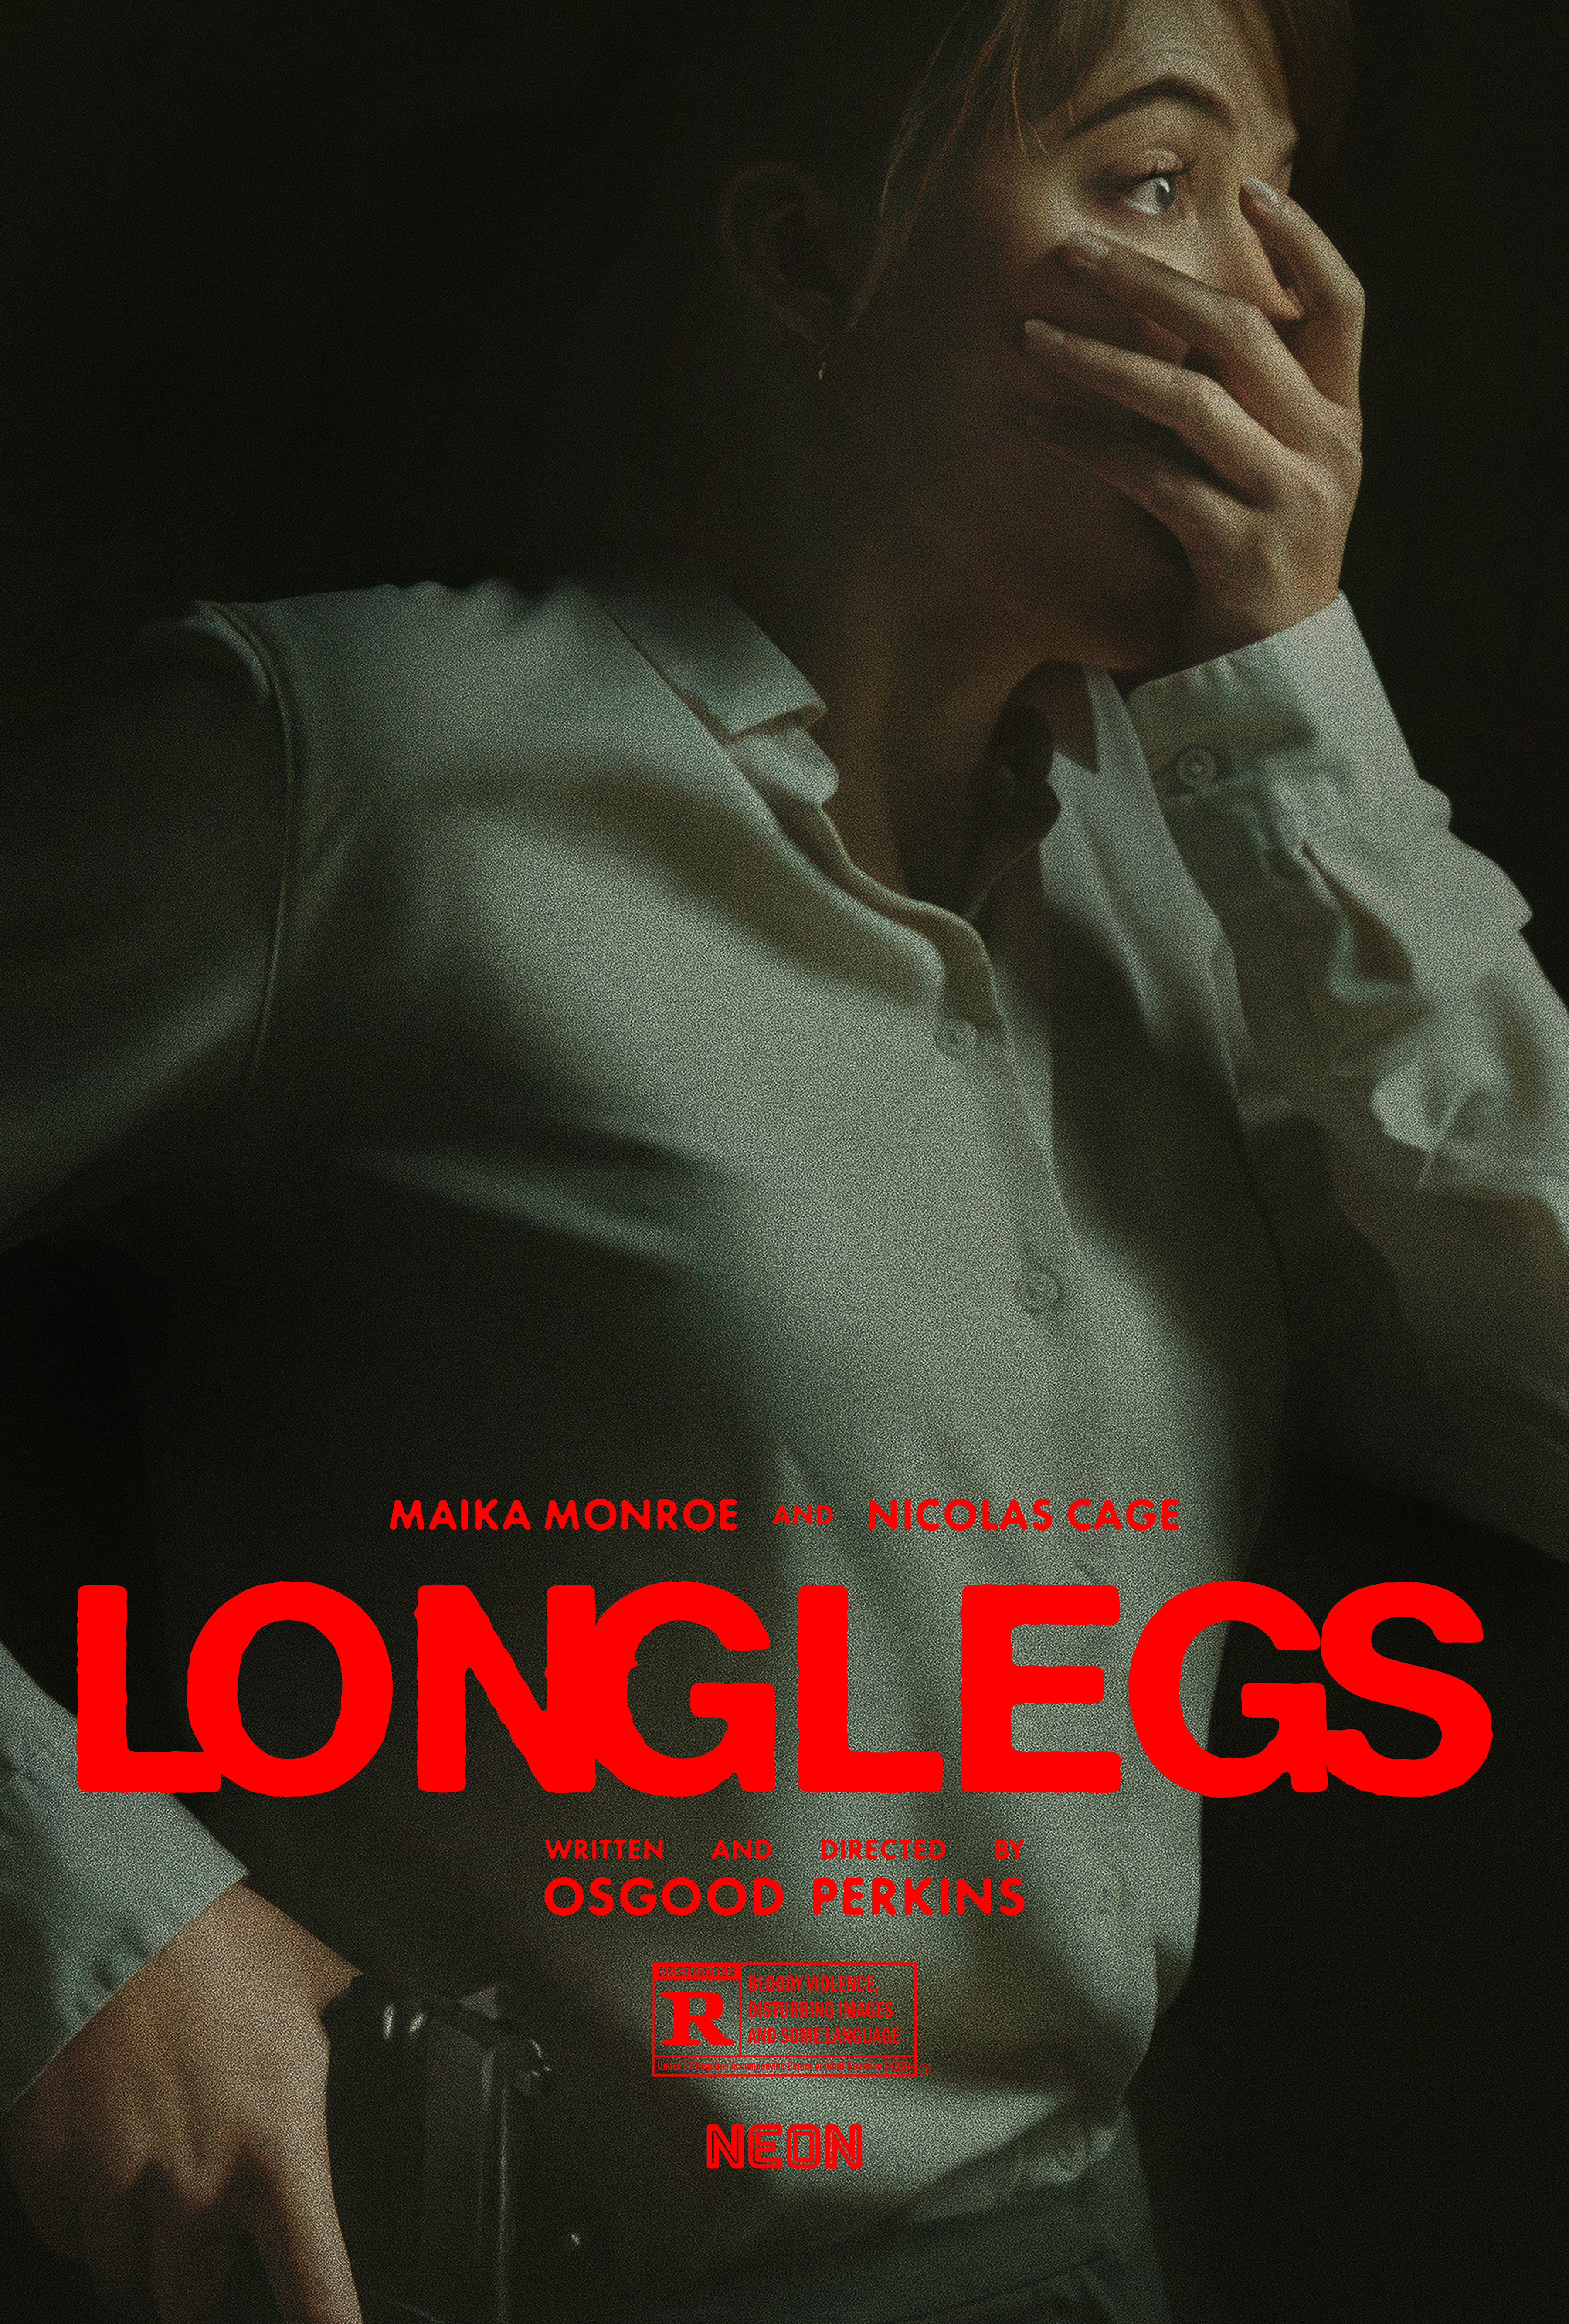 Постер «Длинноногих» намекает на шокирующий фильм ужасов с Николасом Кейджем в главной роли